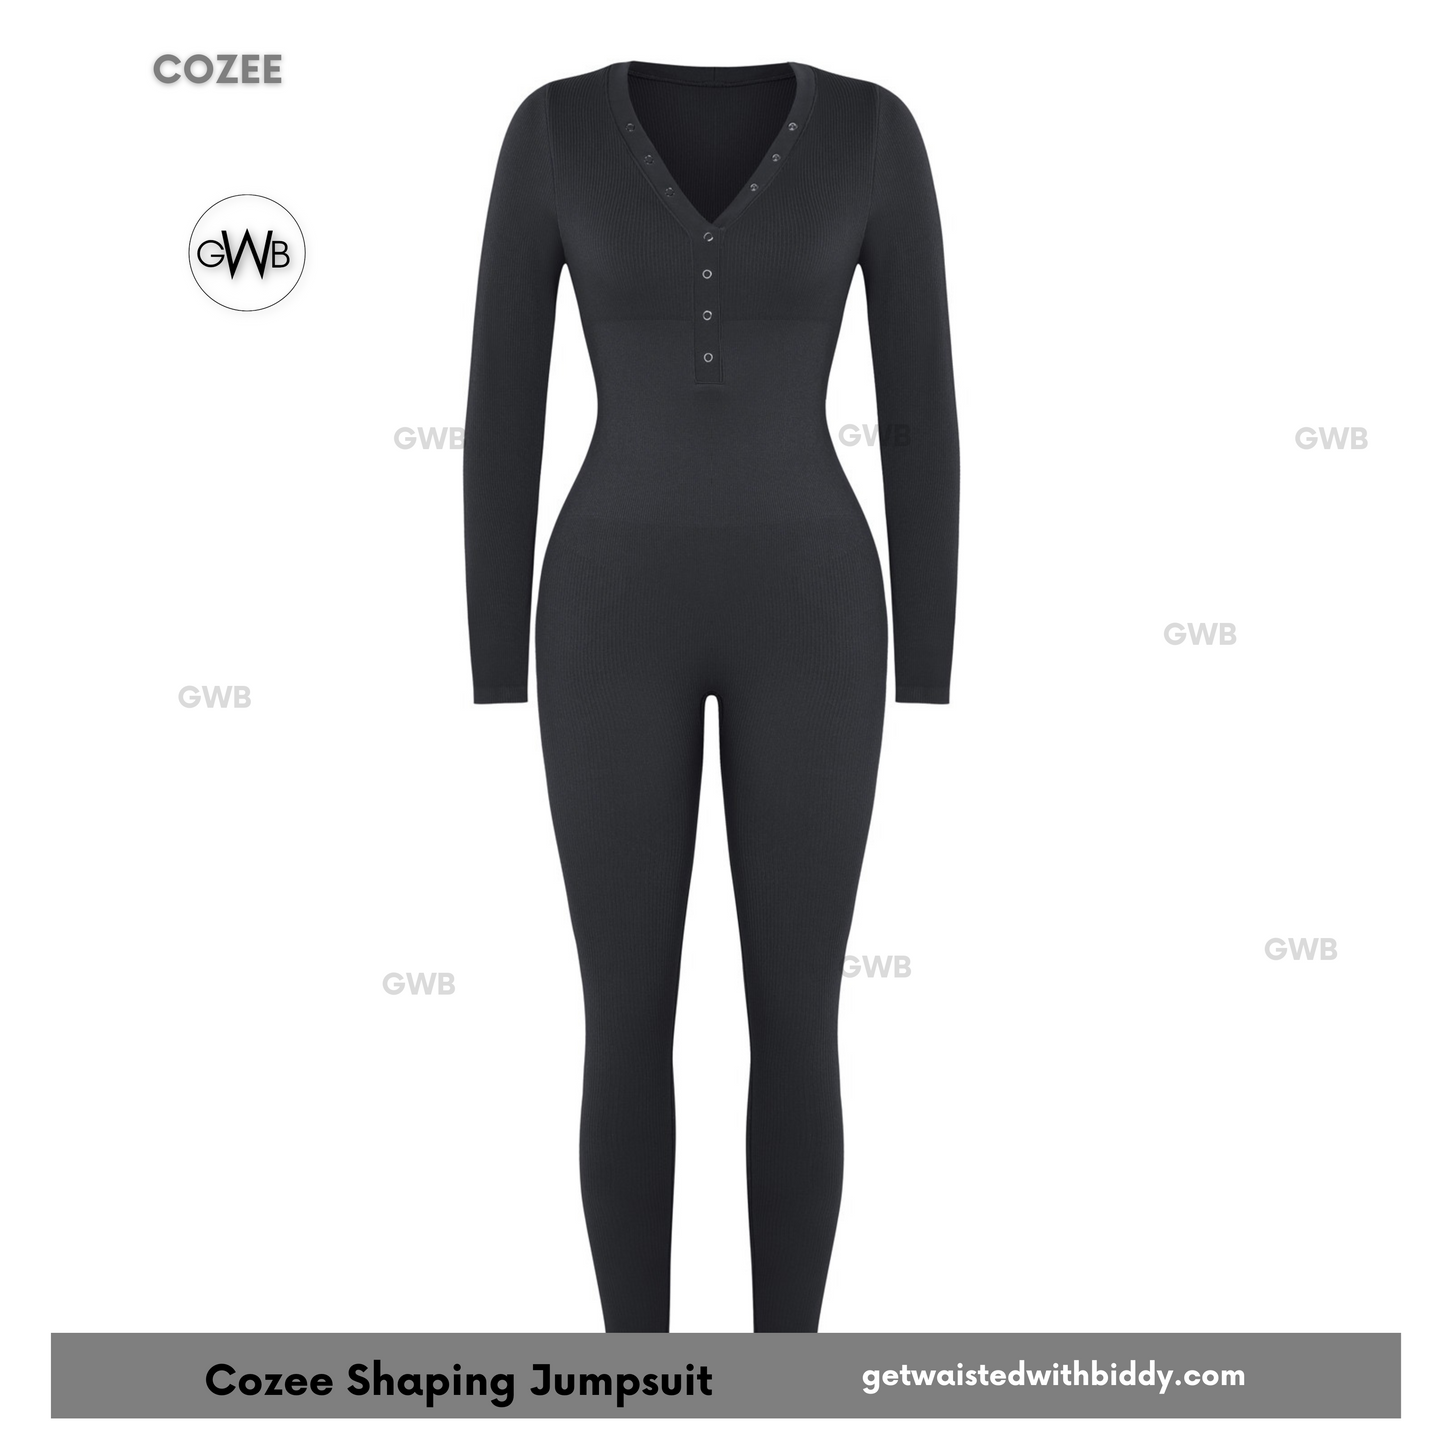 NEW! GWB Cozee Loungewear Jumpsuit Bodysuit Green